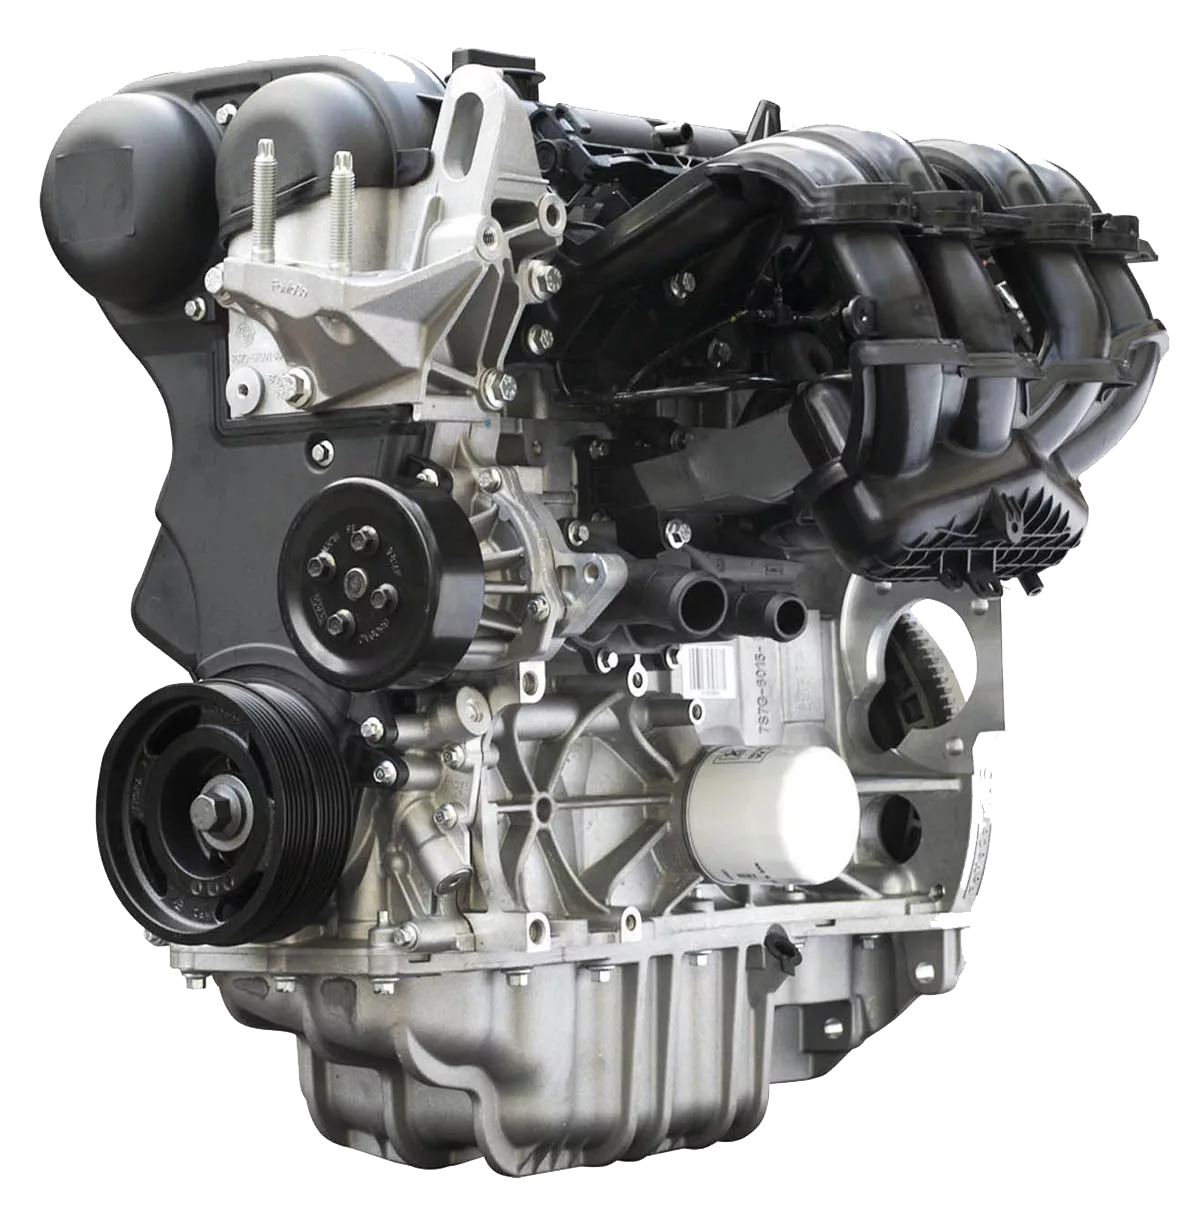 1.6 л 5. Двигатель Форд фокус 1.6 Duratec. Duratec 1.6 ti-VCT 115 Л.С. Двигатель Форд фокус 1 1.6. Мотор Форд фокус 2 1.6 100 л.с.